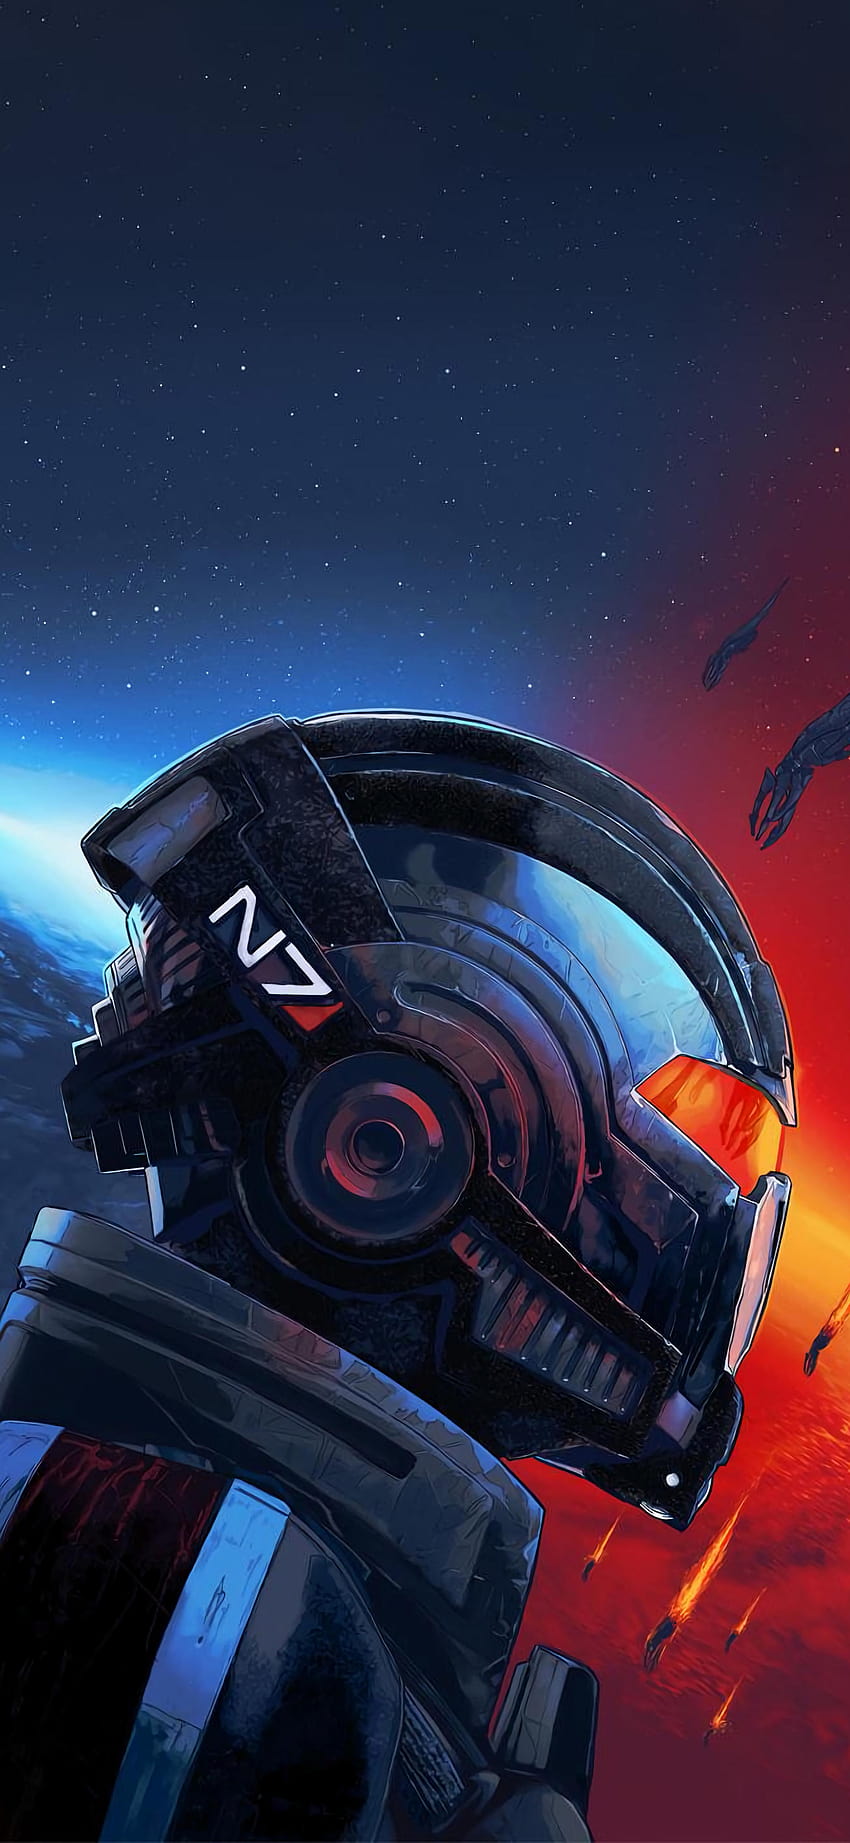 Mass Effect Legendary Edition [2611x5660] : Mobile HD phone wallpaper